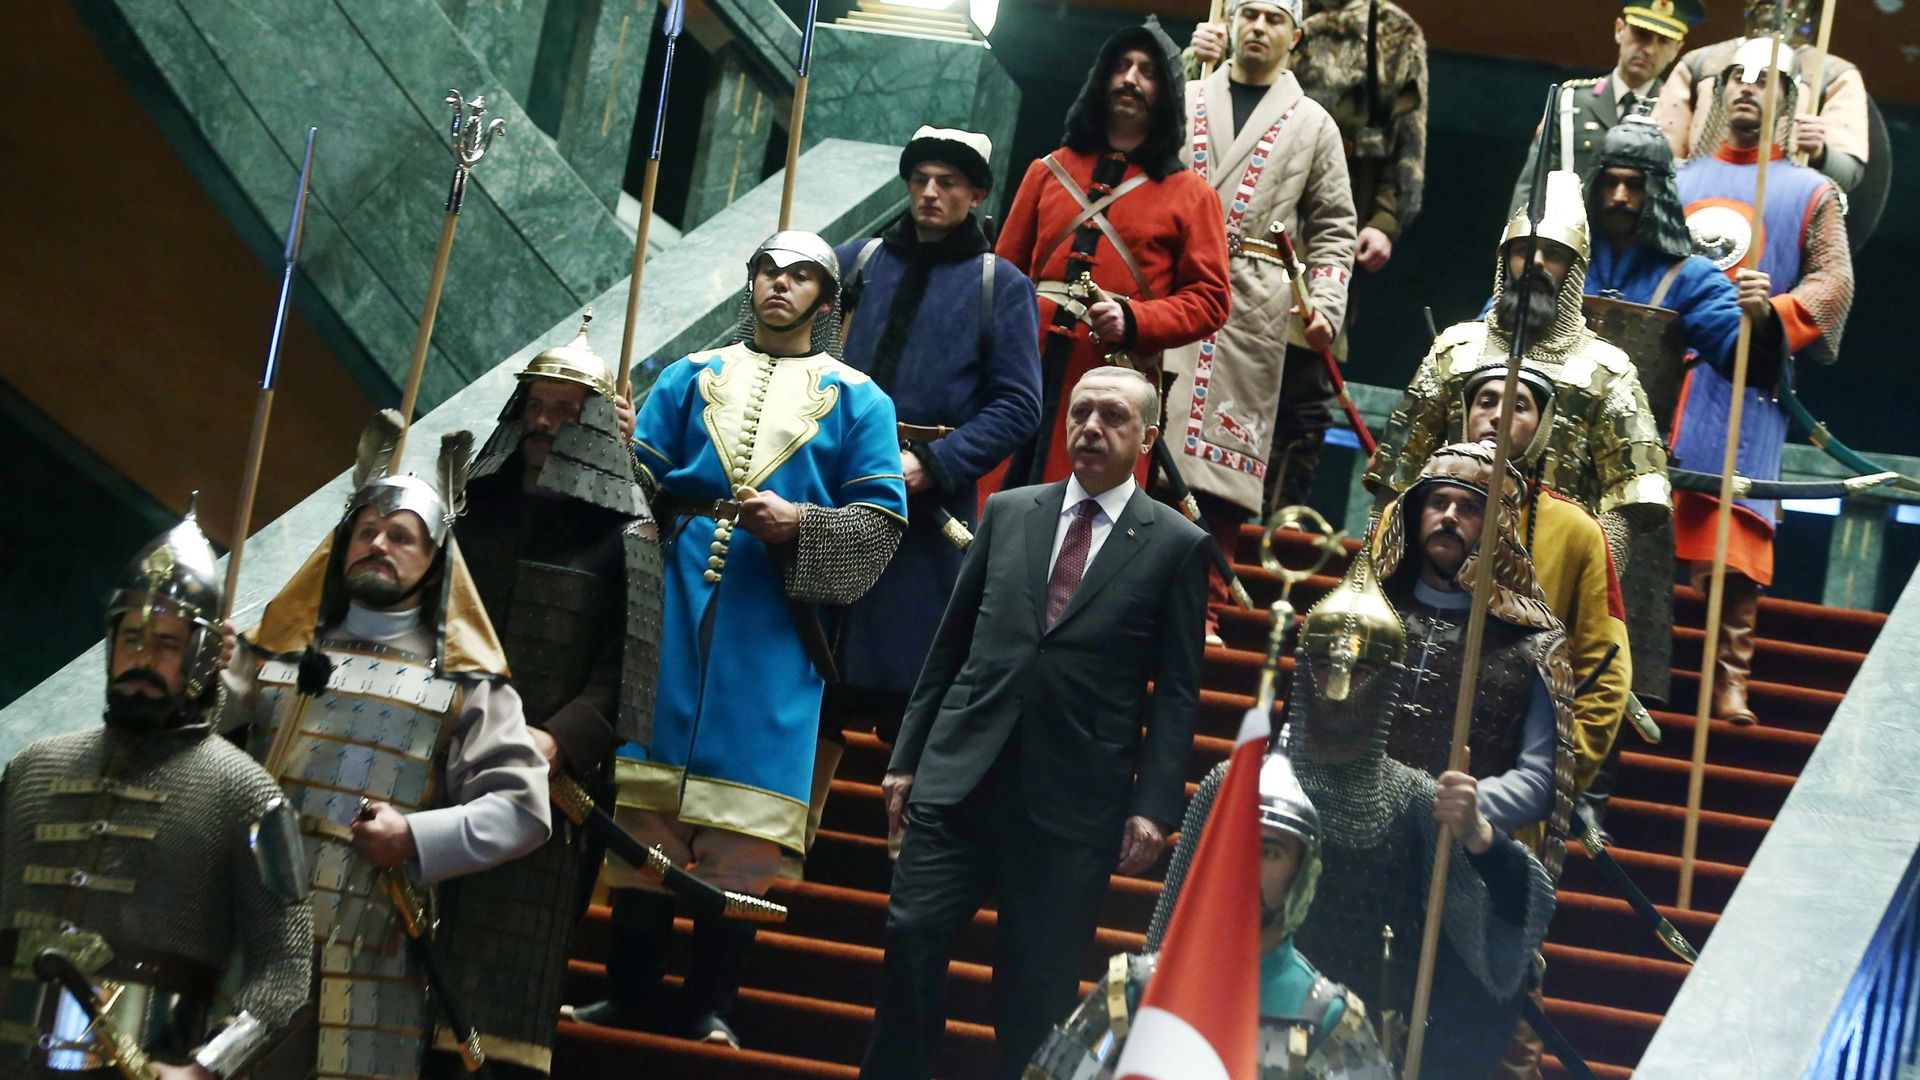 Le président turc Recep Erdogan sur les marches de son majestueux palais présidentiel d’Ankara entre une haie de guerriers en vêtements d’époque. 